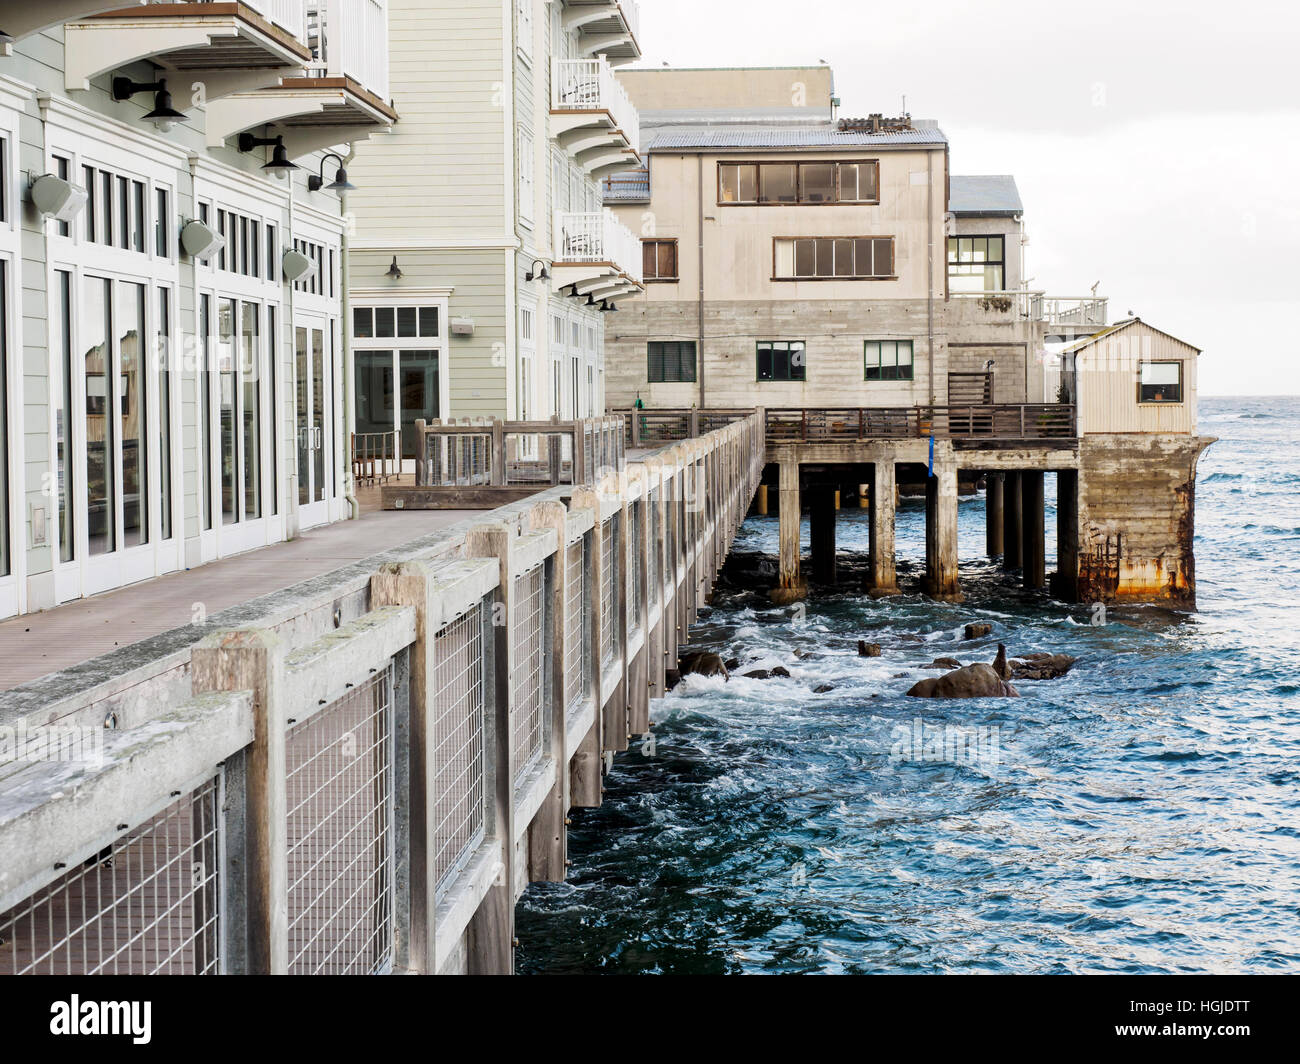 L'hôtel Monterey Clement se dresse sur le front de mer de Cannery Row, Monterey, Californie, avec l'Aquarium au-delà. Banque D'Images